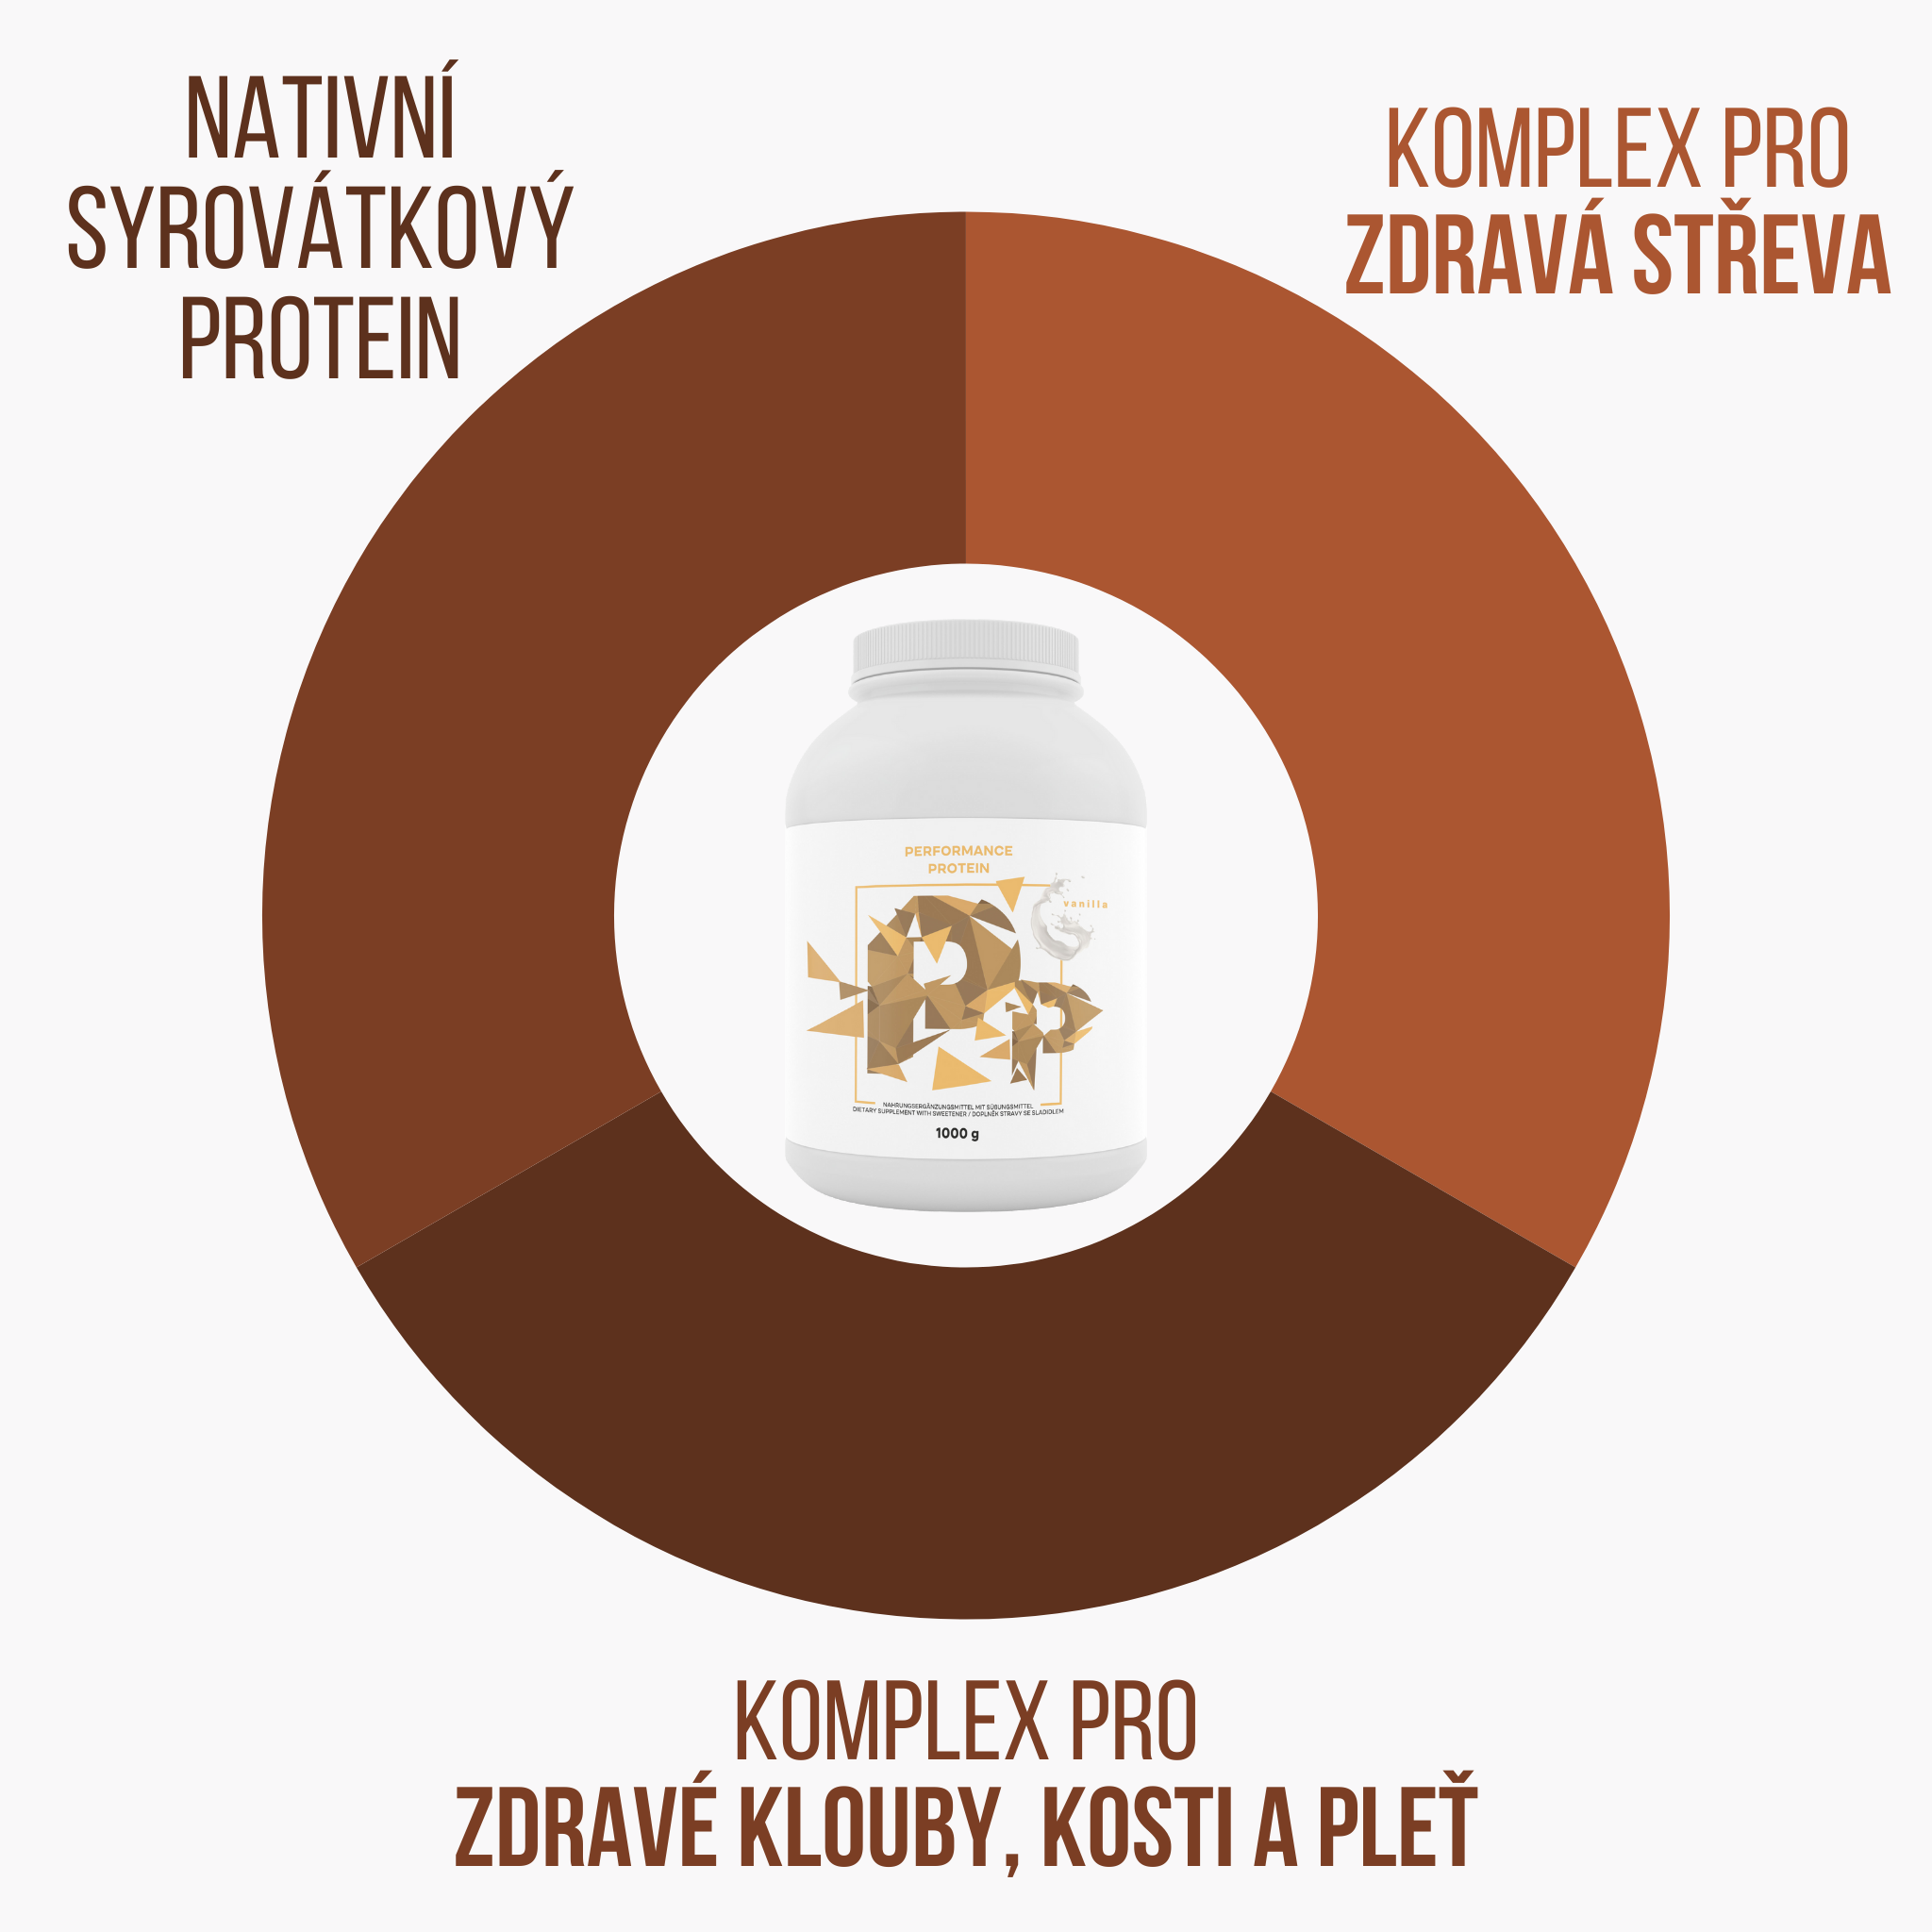 Nativní syrovátkový protein